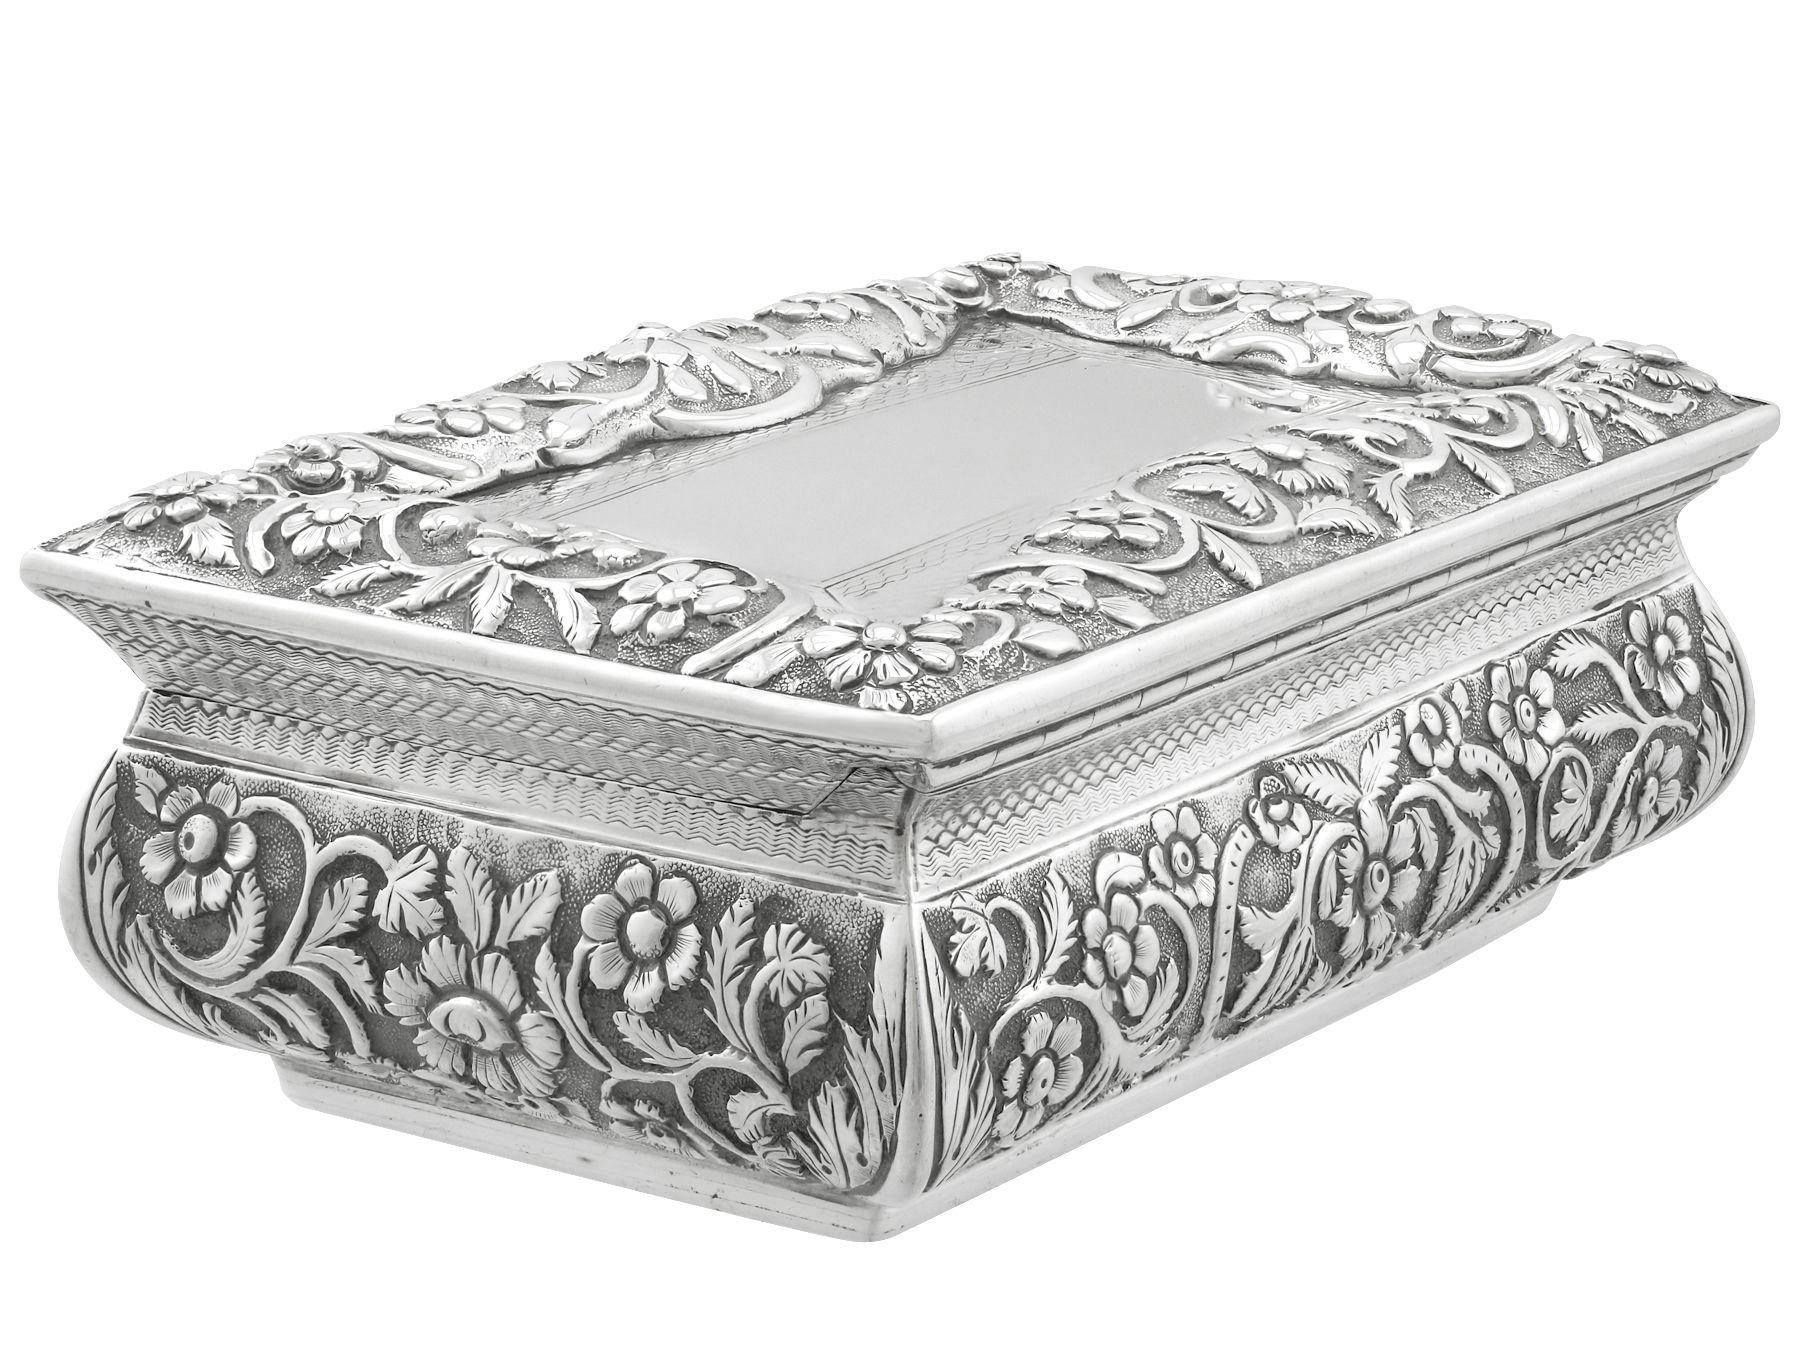 Joseph Willmore Antique 1836 Sterling Silver Table Snuff Box For Sale ...